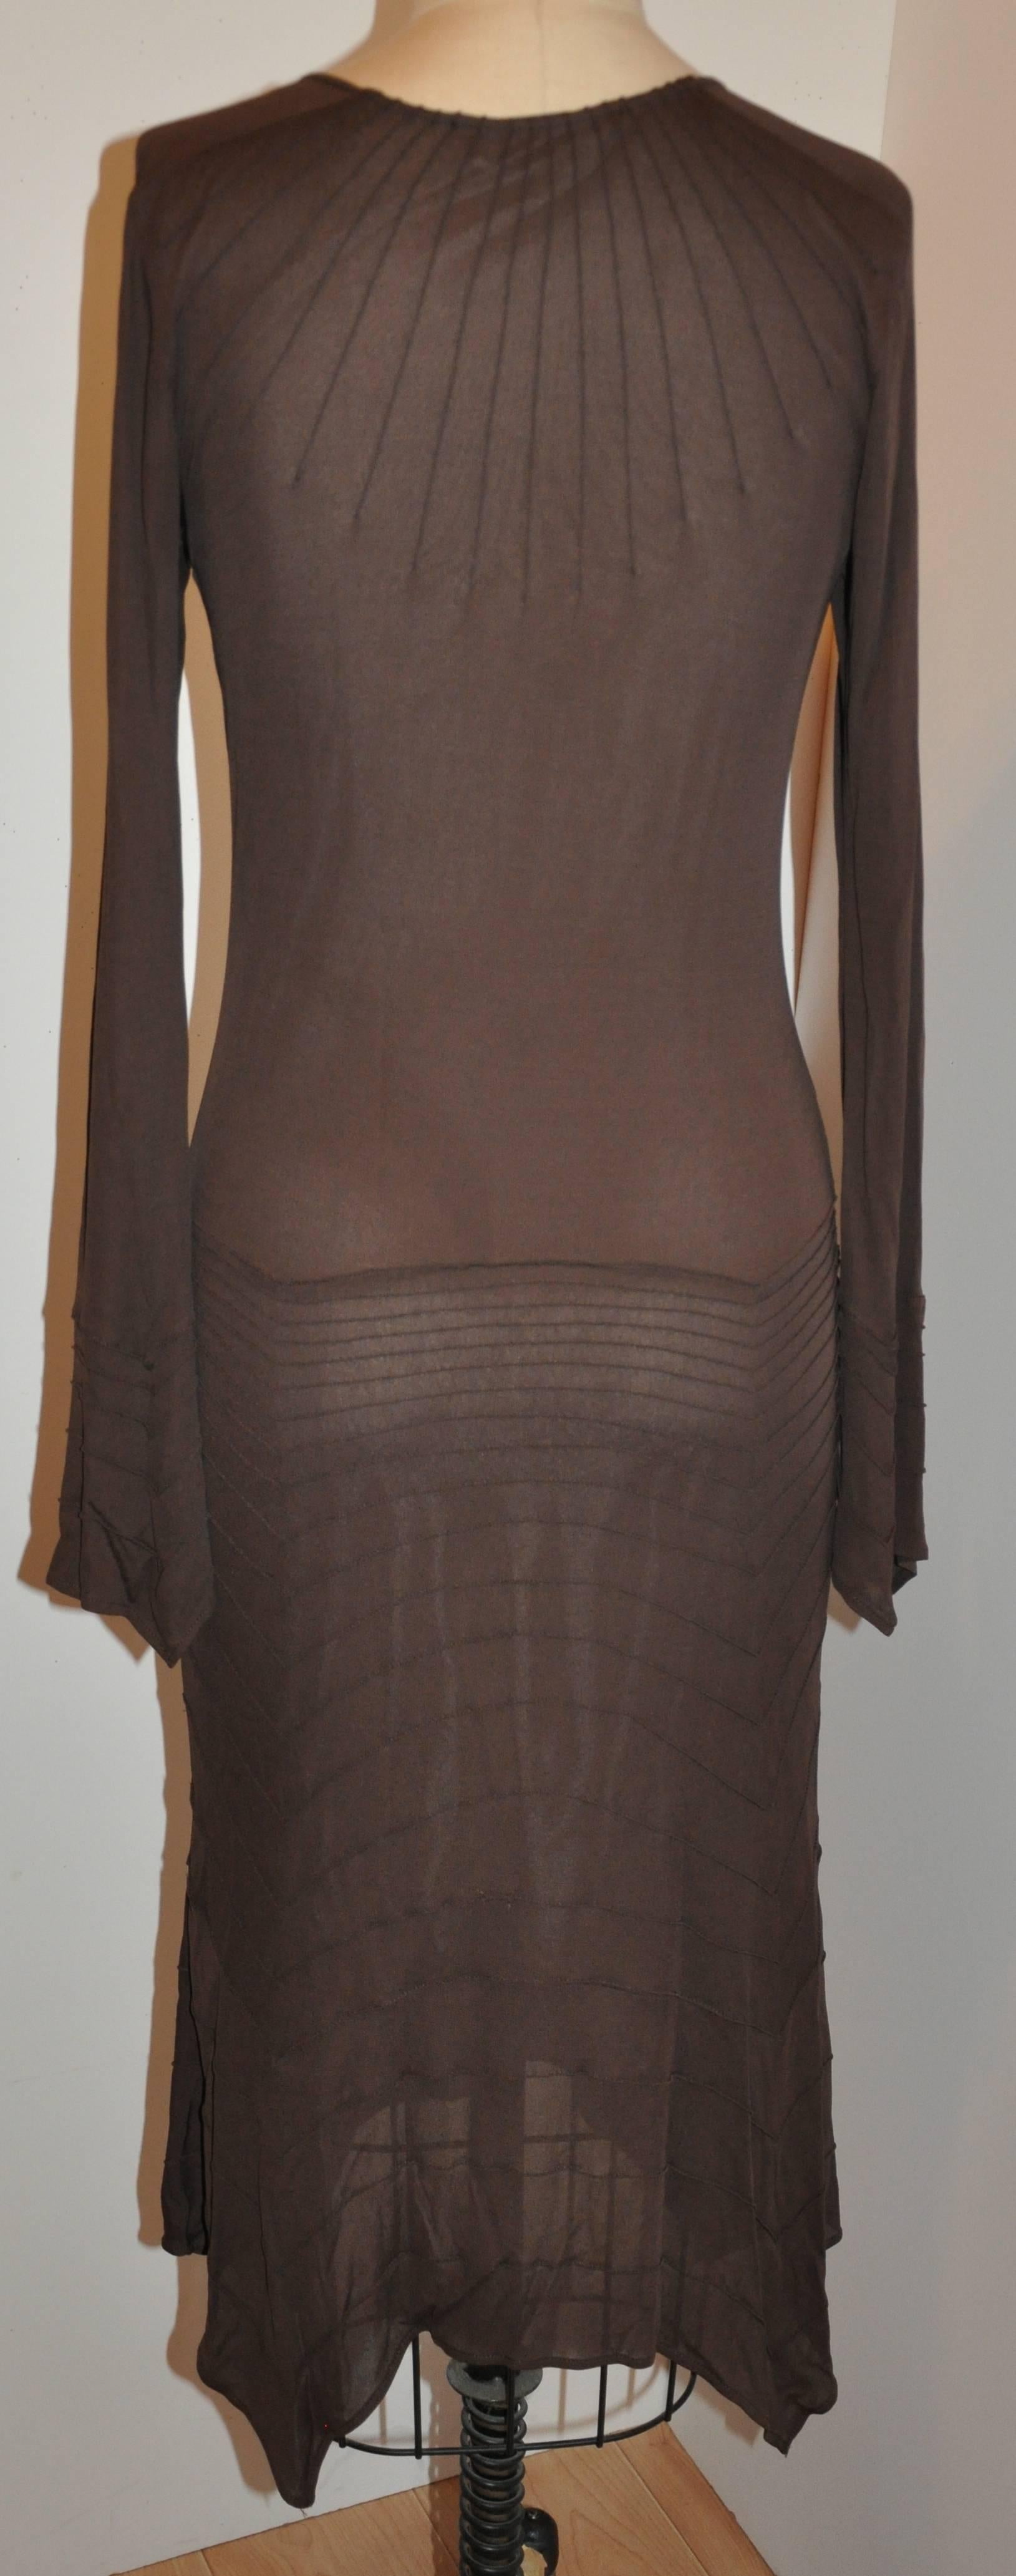           Das kokosbraune, figurbetonte Kleid mit Rundhalsausschnitt aus gefüttertem Jersey von Yves Saint Laurent hat einen Taschentuch-Saum sowohl am Saum des Kleides als auch am Bündchen der Glockenärmel. Detaillierte Steppnähte in diesem